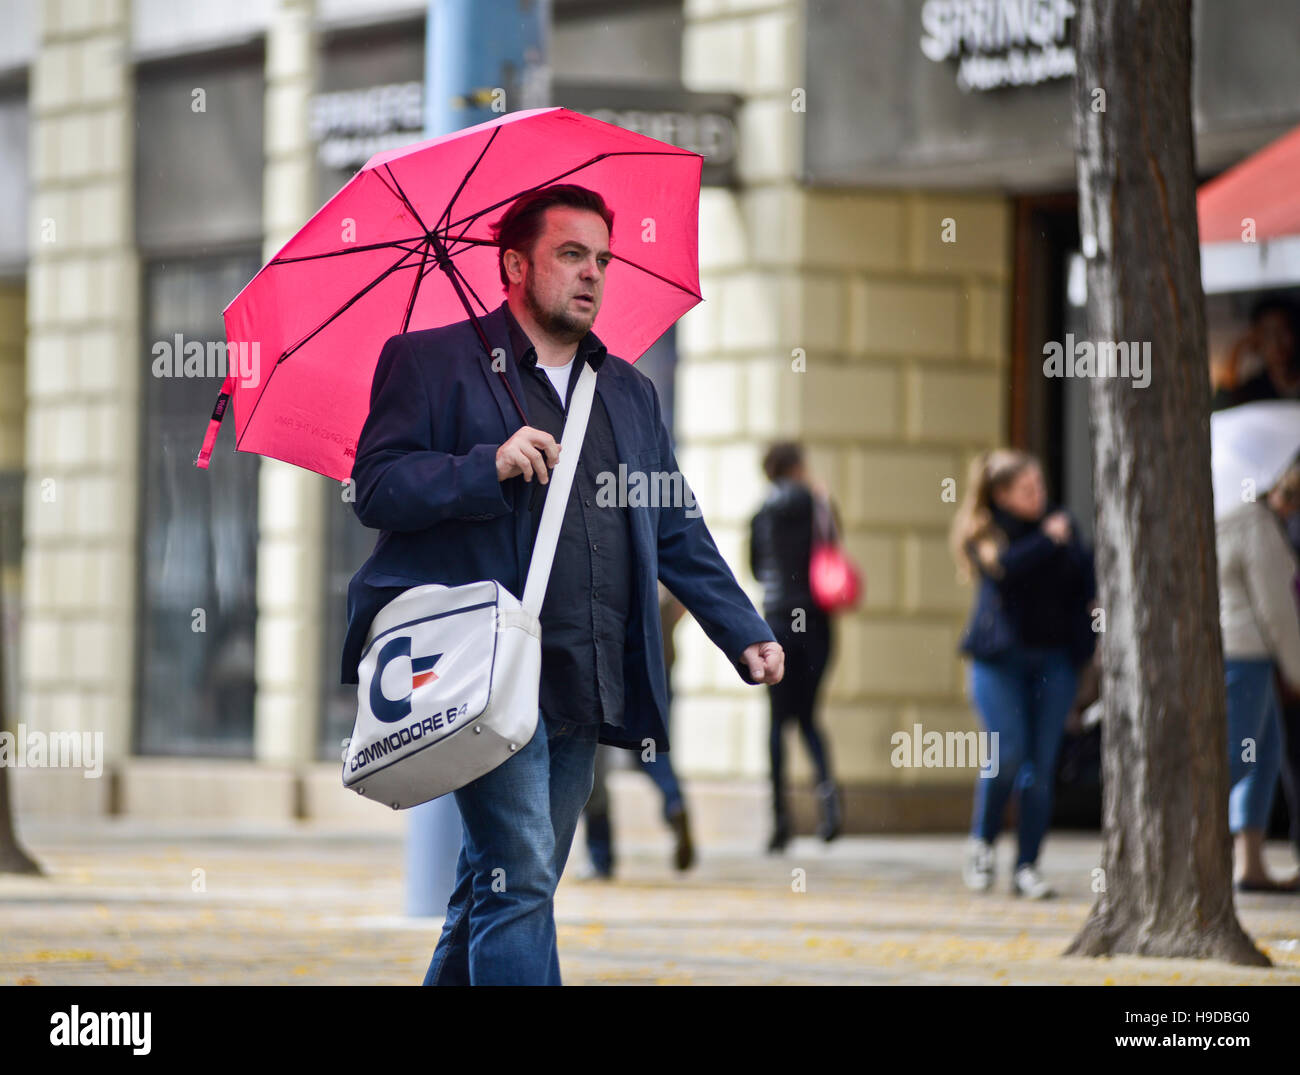 Hombre caminando por la calle vistiendo un paraguas rosa y bolsa de la marca  Commodore. Viena, Austria Fotografía de stock - Alamy